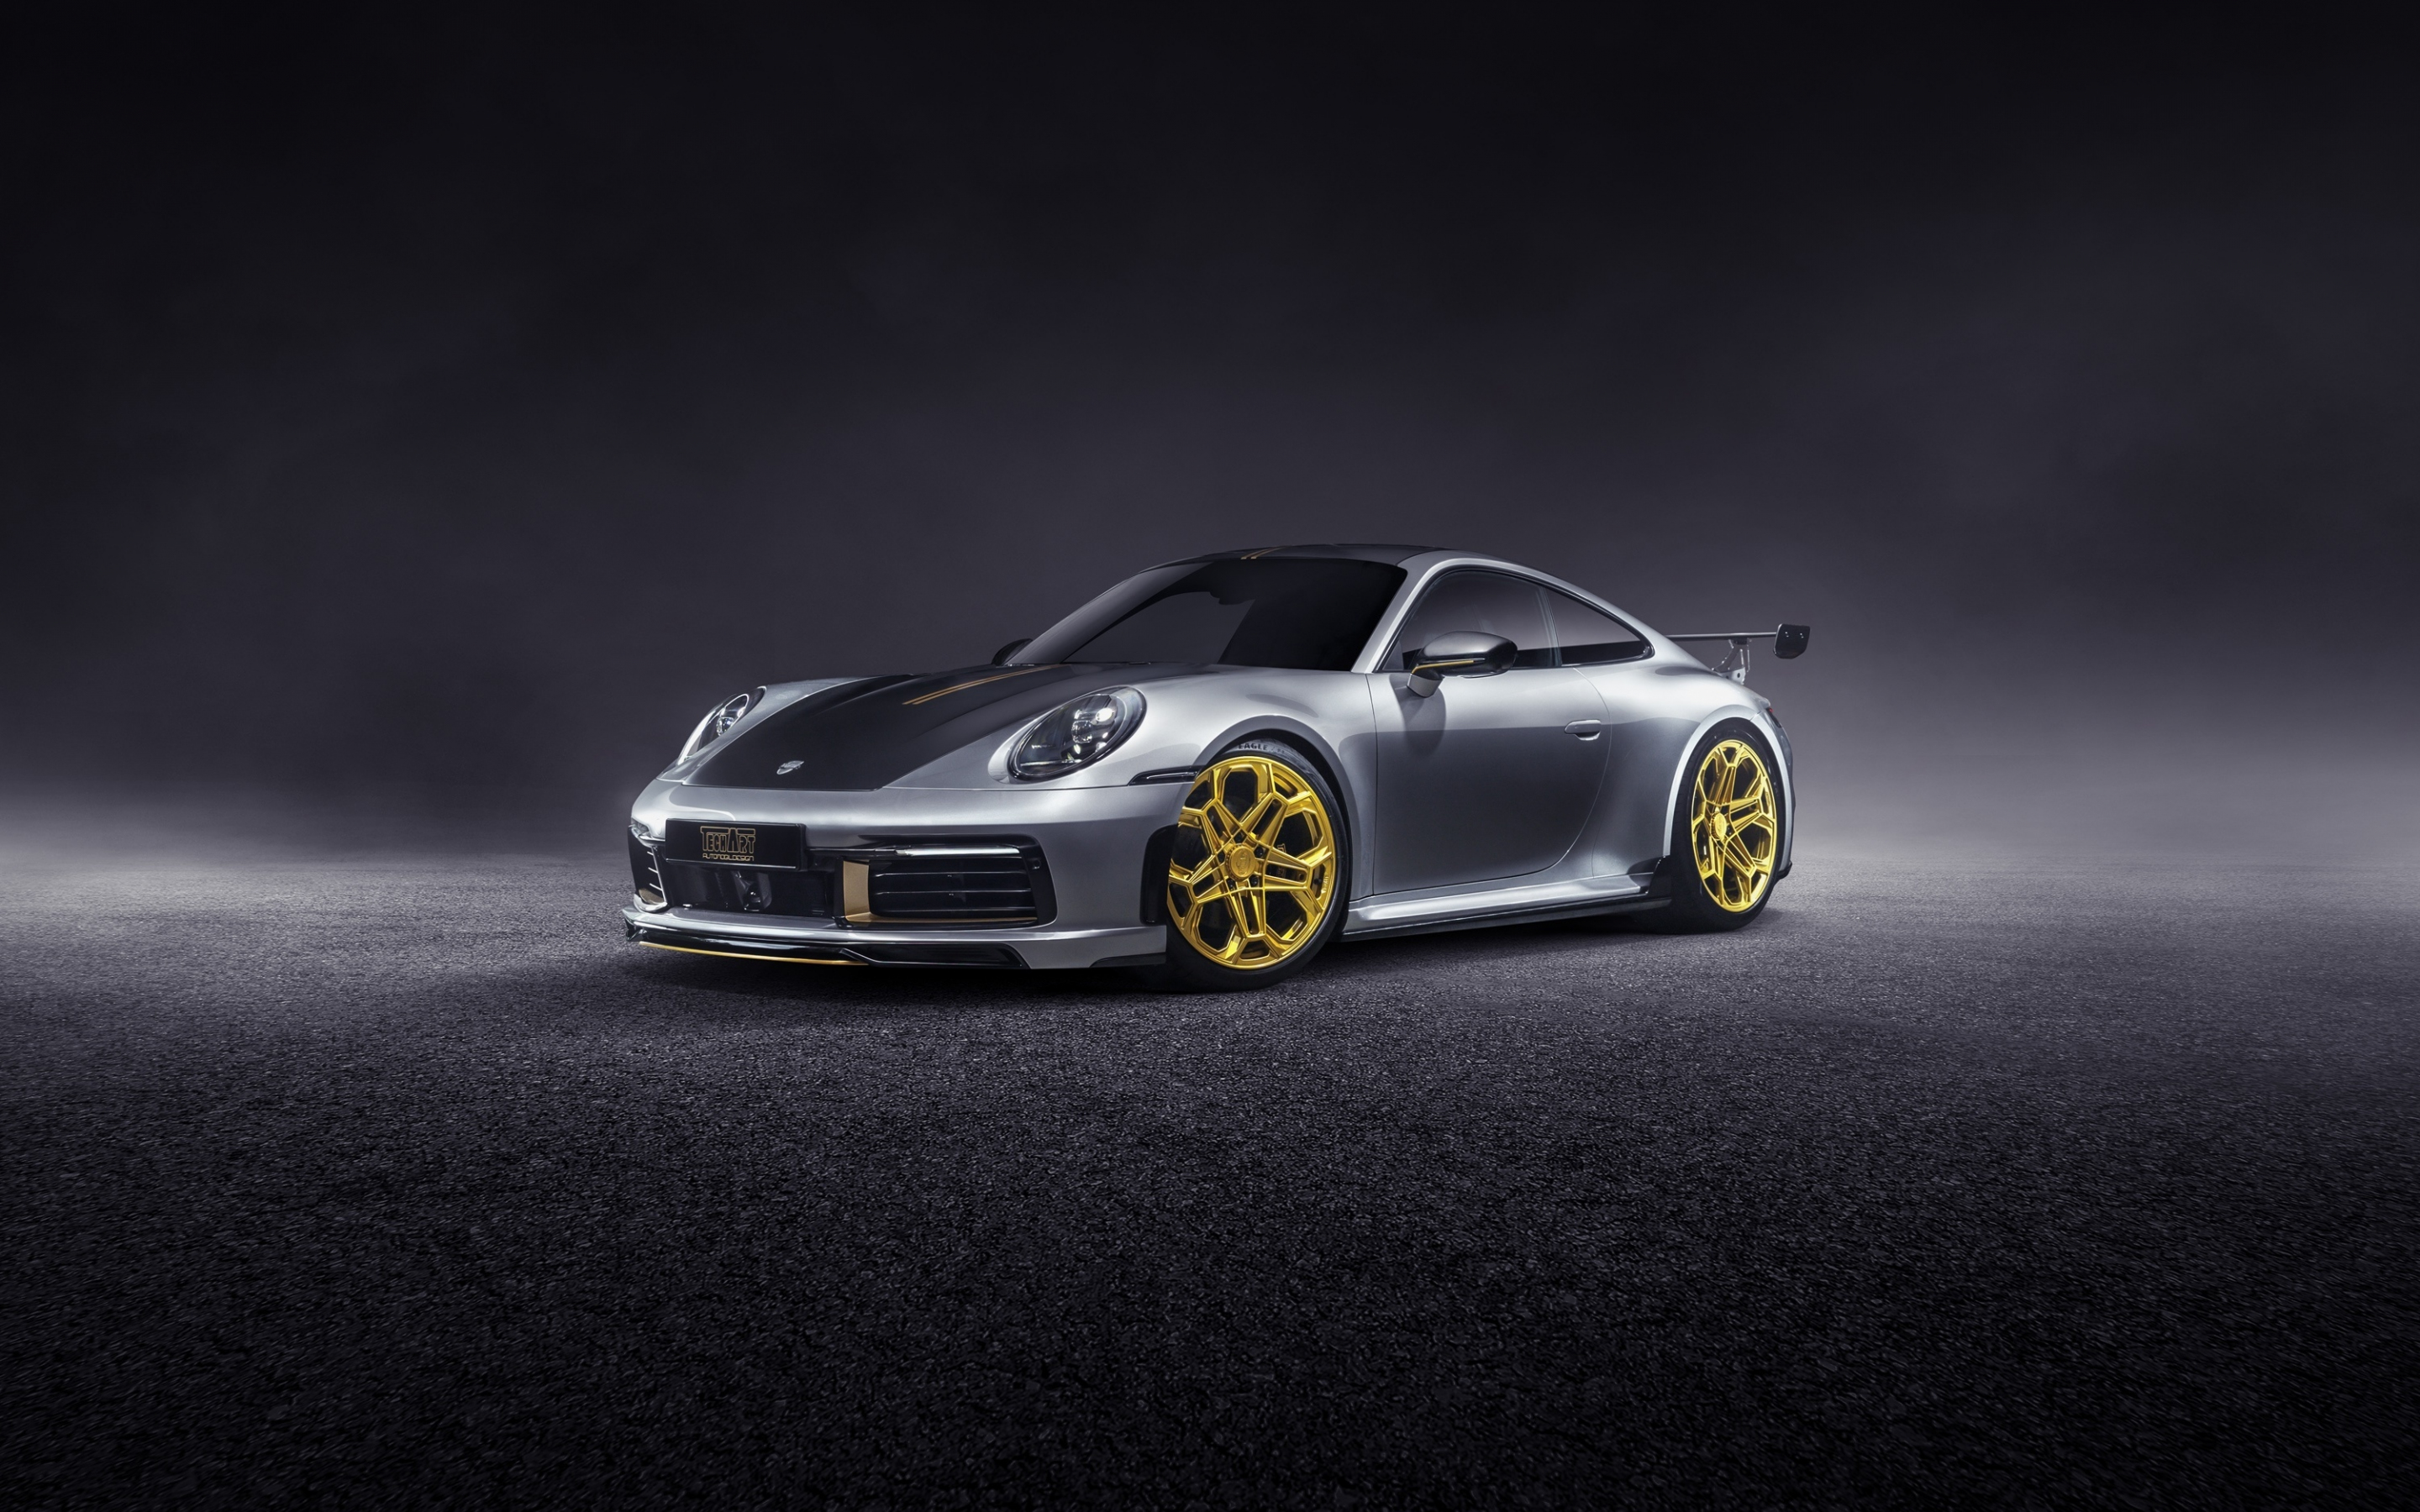 Car, sportcar, Porsche 911 Carrera, 2880x1800 wallpaper